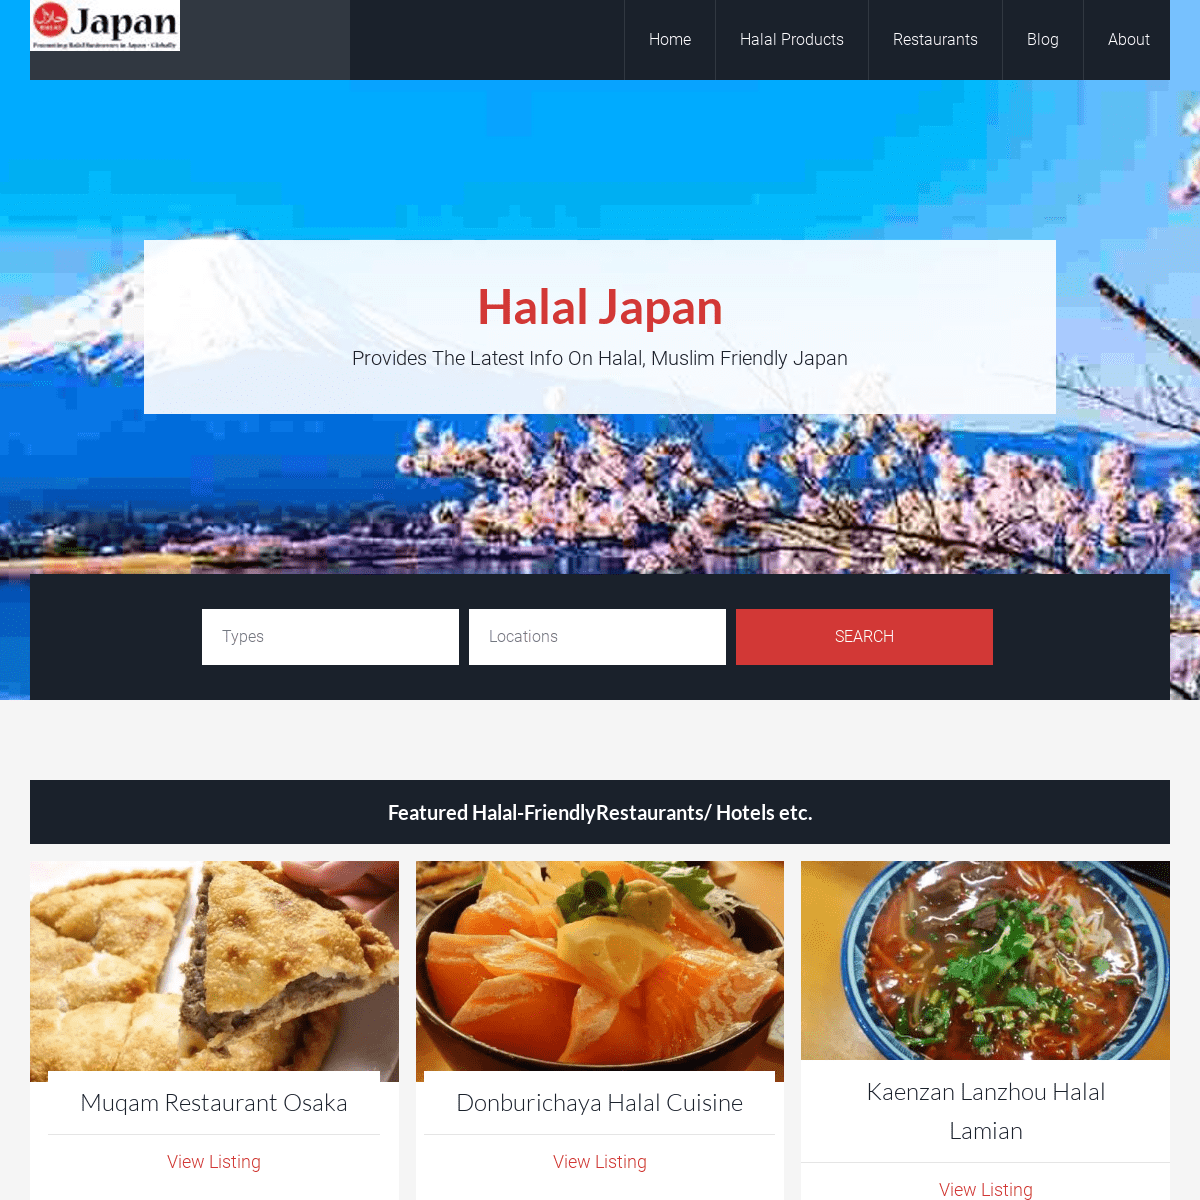 A complete backup of halaljapan.com